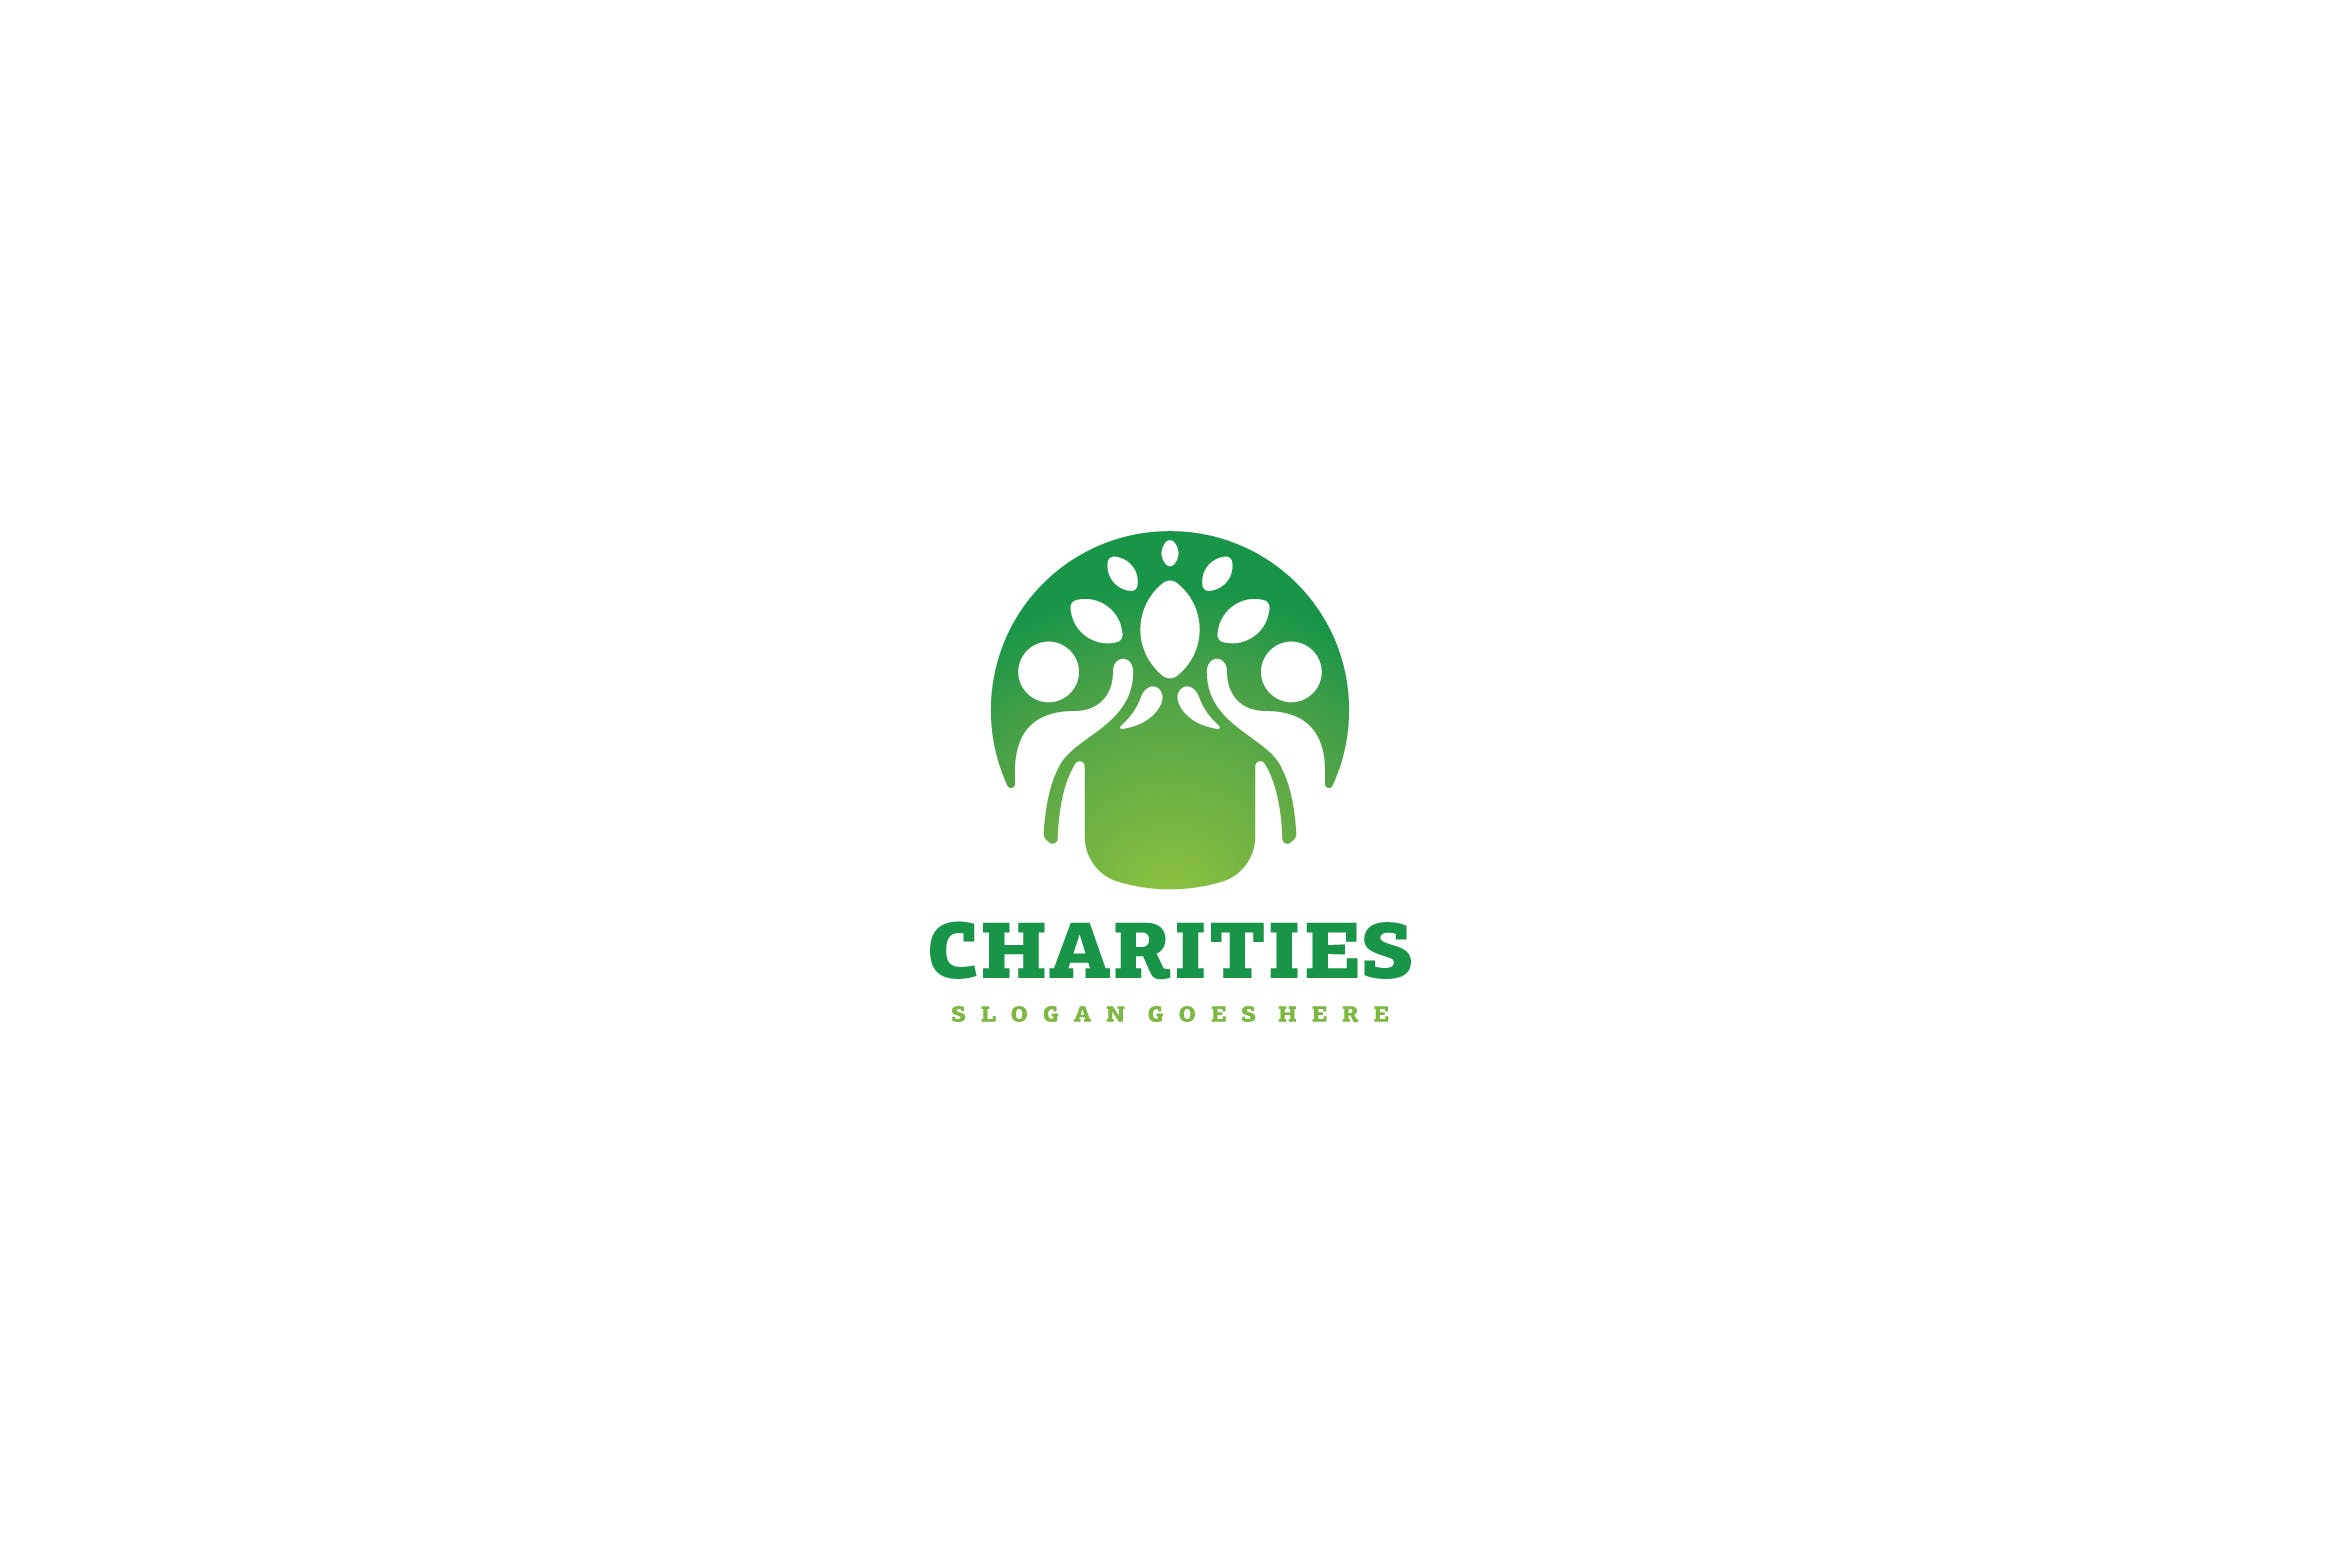 生态慈善行业Logo设计素材库精选模板 Eco Charities Logo插图